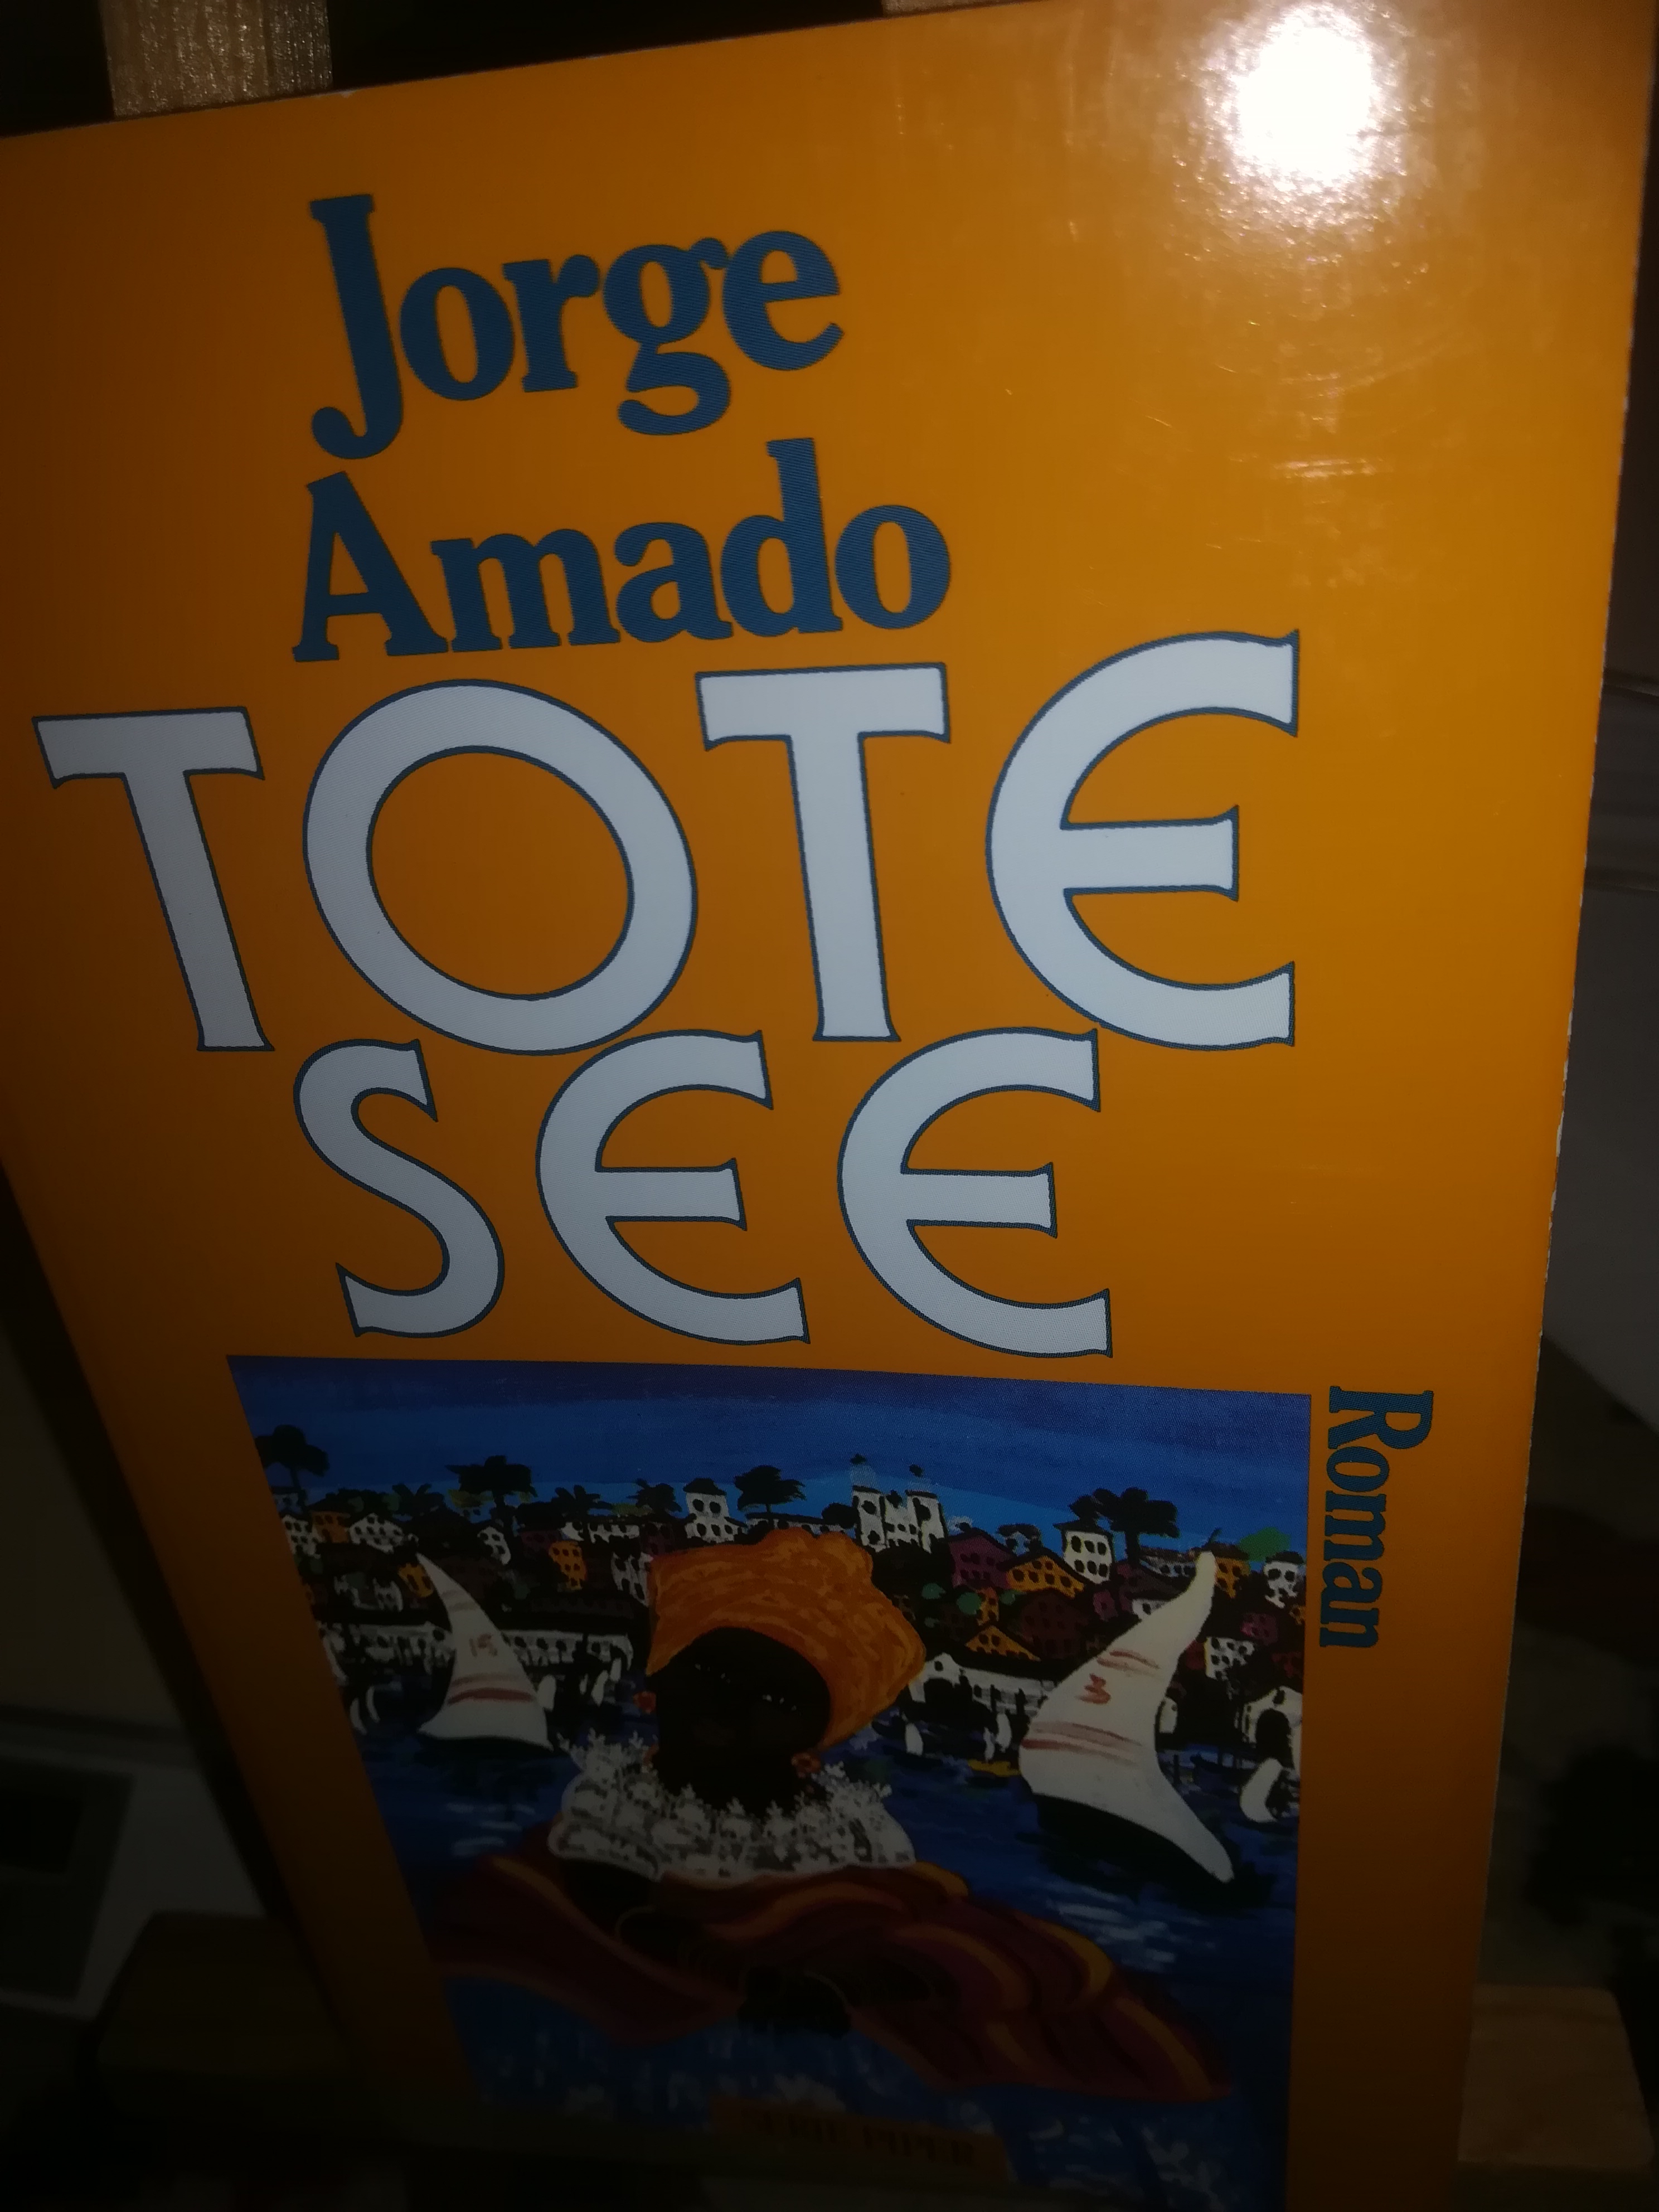 Tote See - Amado Jorge